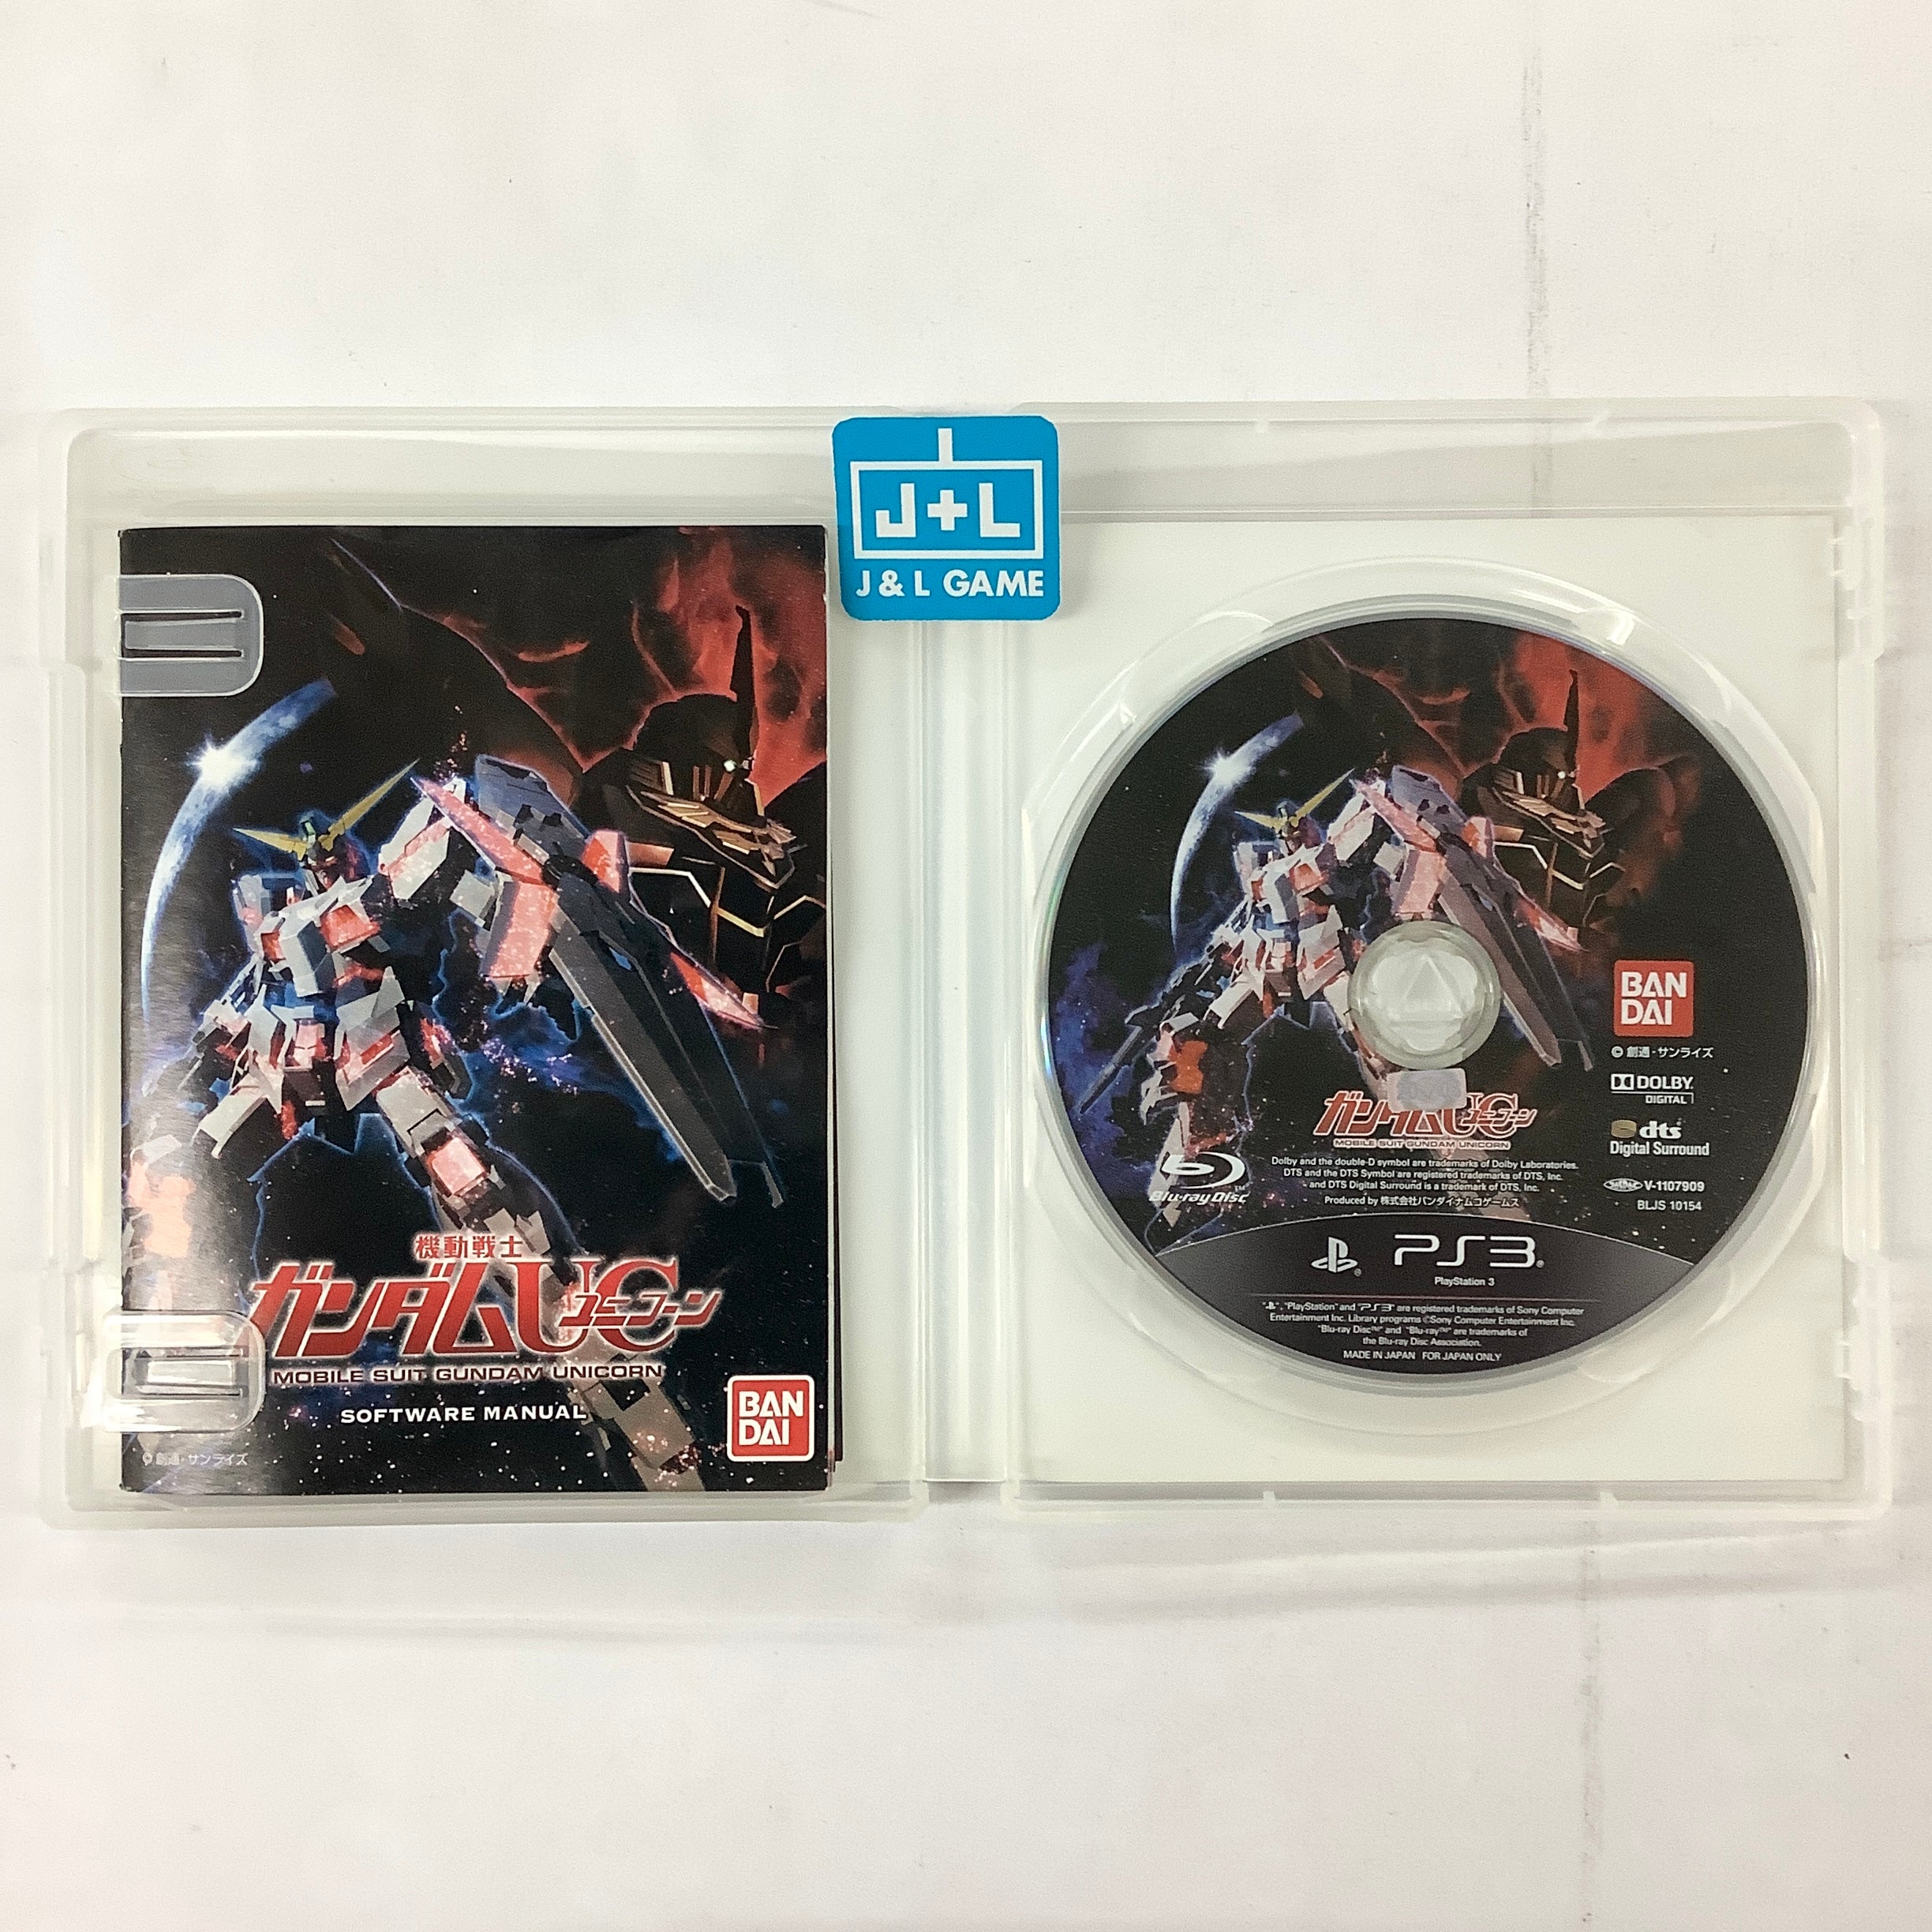 Kidou Senshi Gundam UC - (PS3) PlayStation 3 [Pre-Owned] (Japanese Import) Video Games Namco Bandai Games   